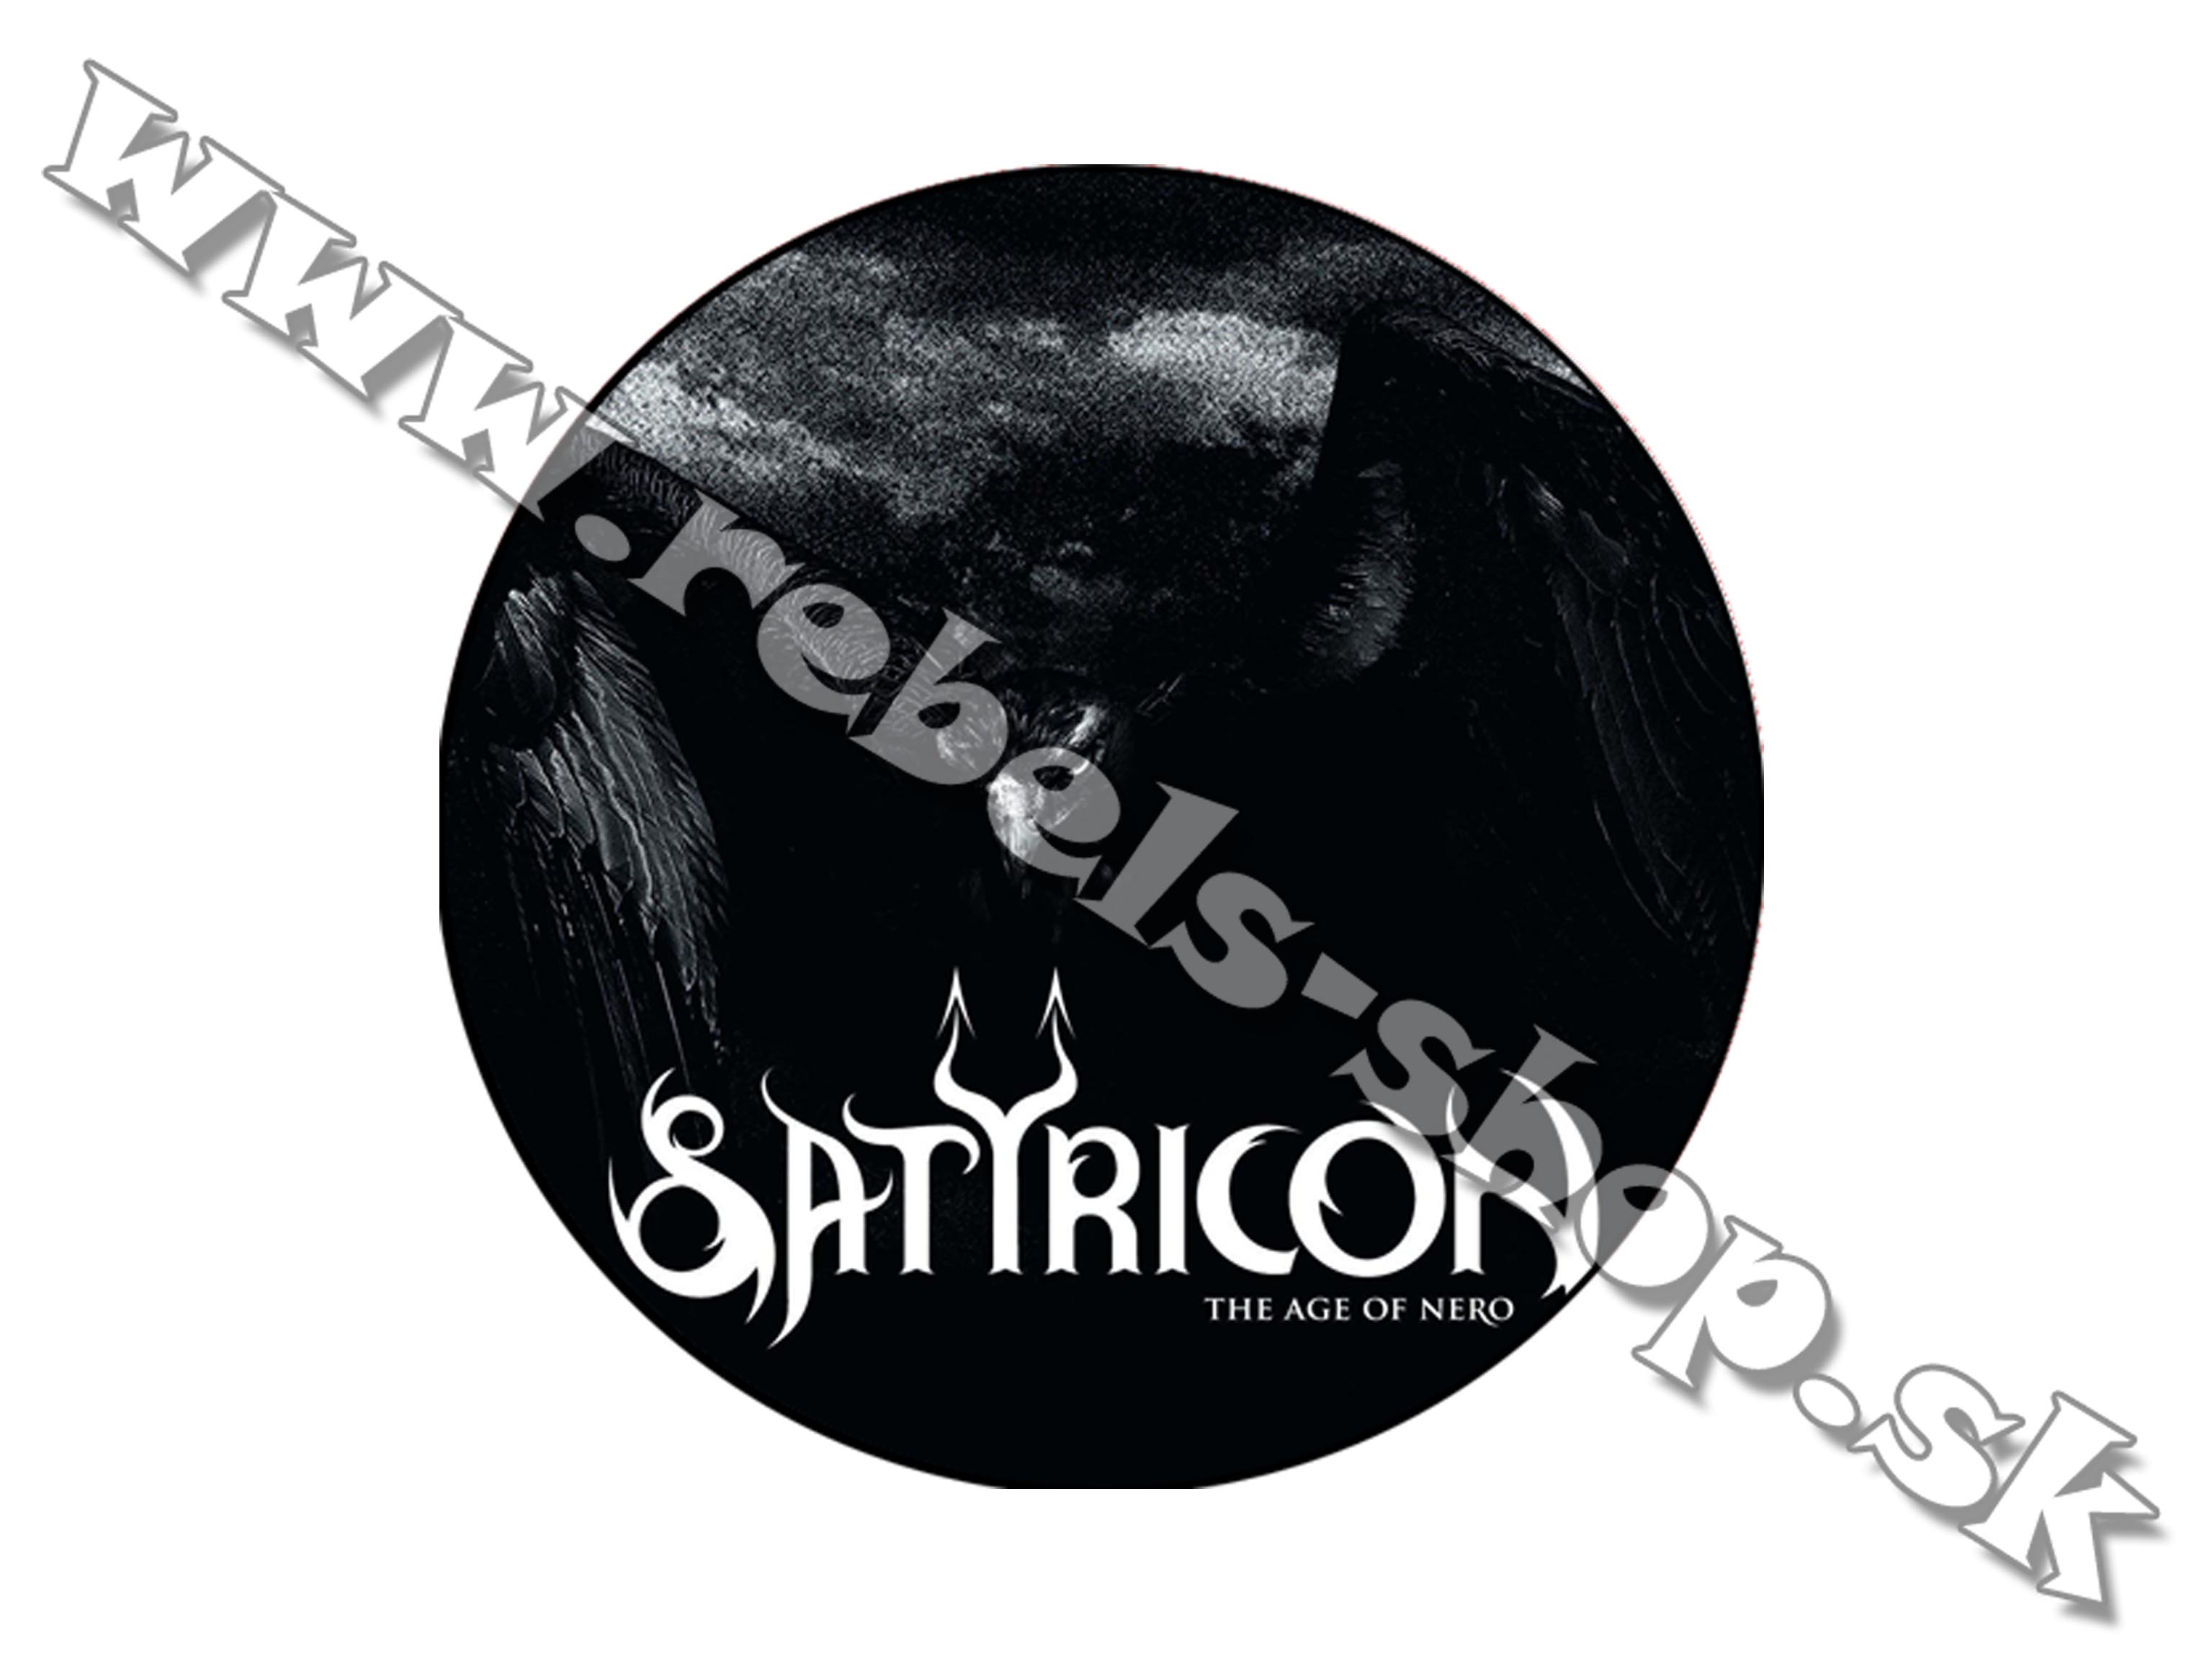 Odznak "Satyricon"